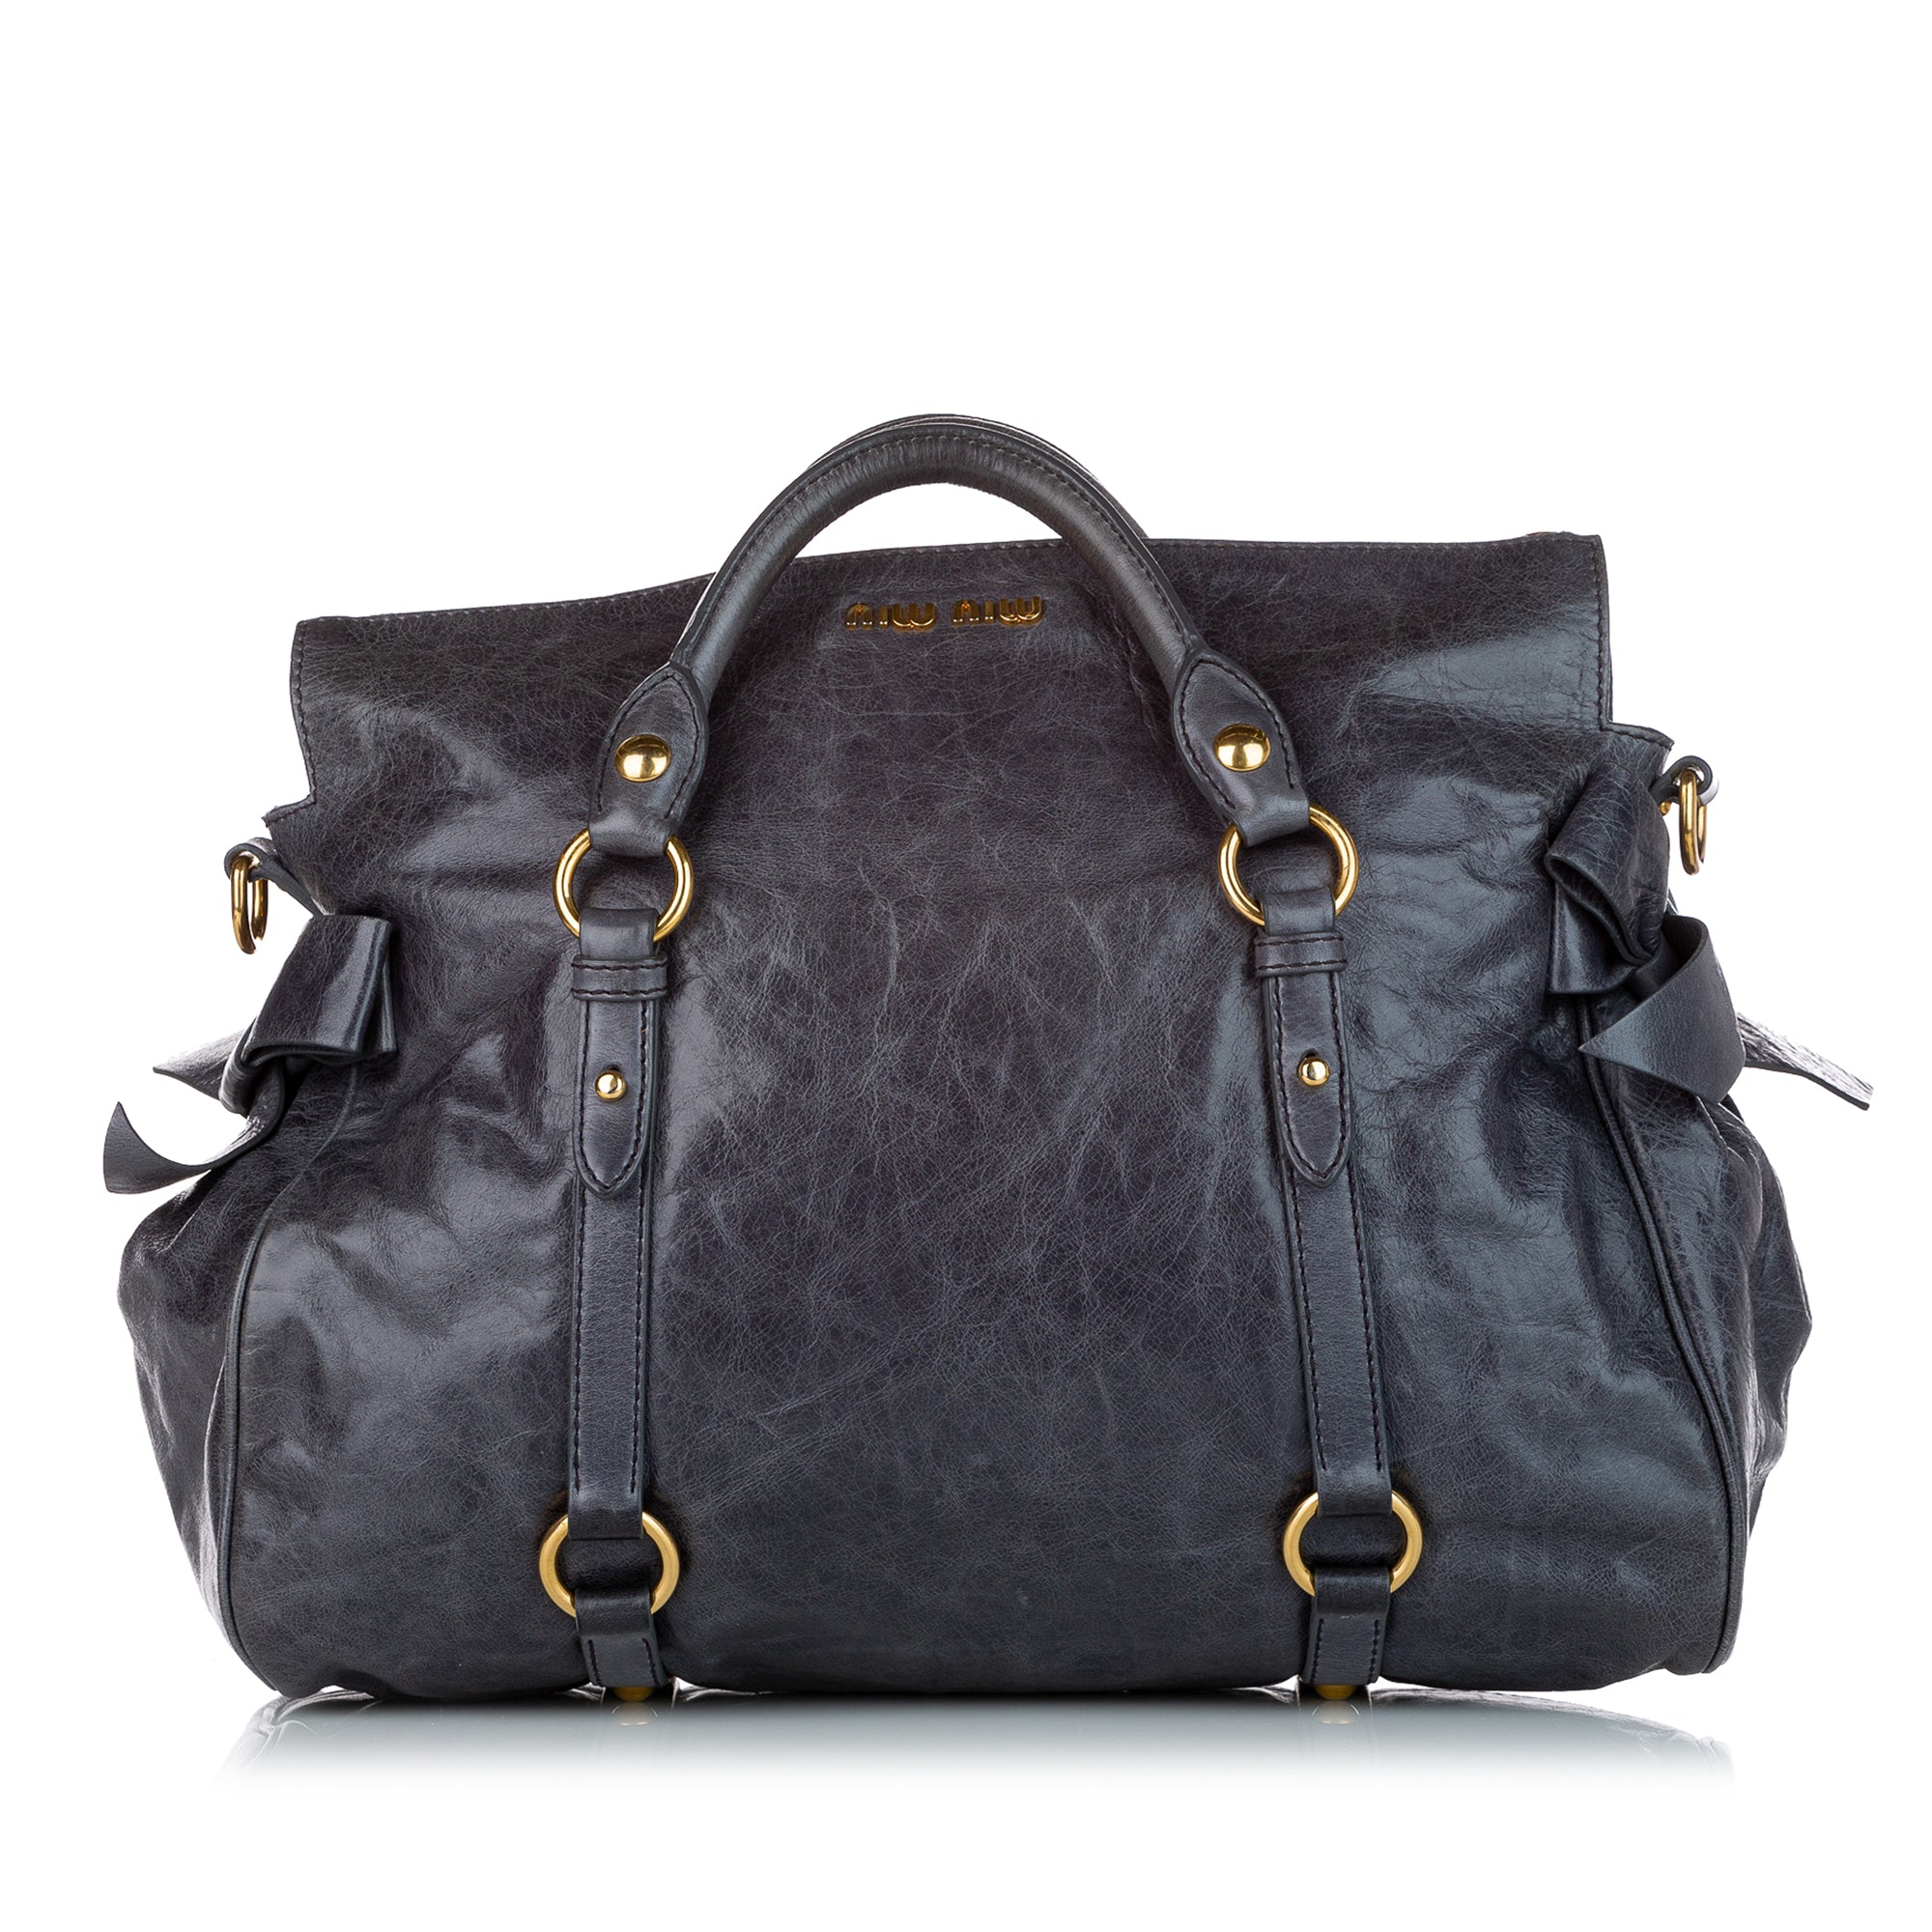 Miu Miu Madras Miu Lady shoulder bag - Blue  Shoulder bag, Miu miu bag,  Blue leather handbag